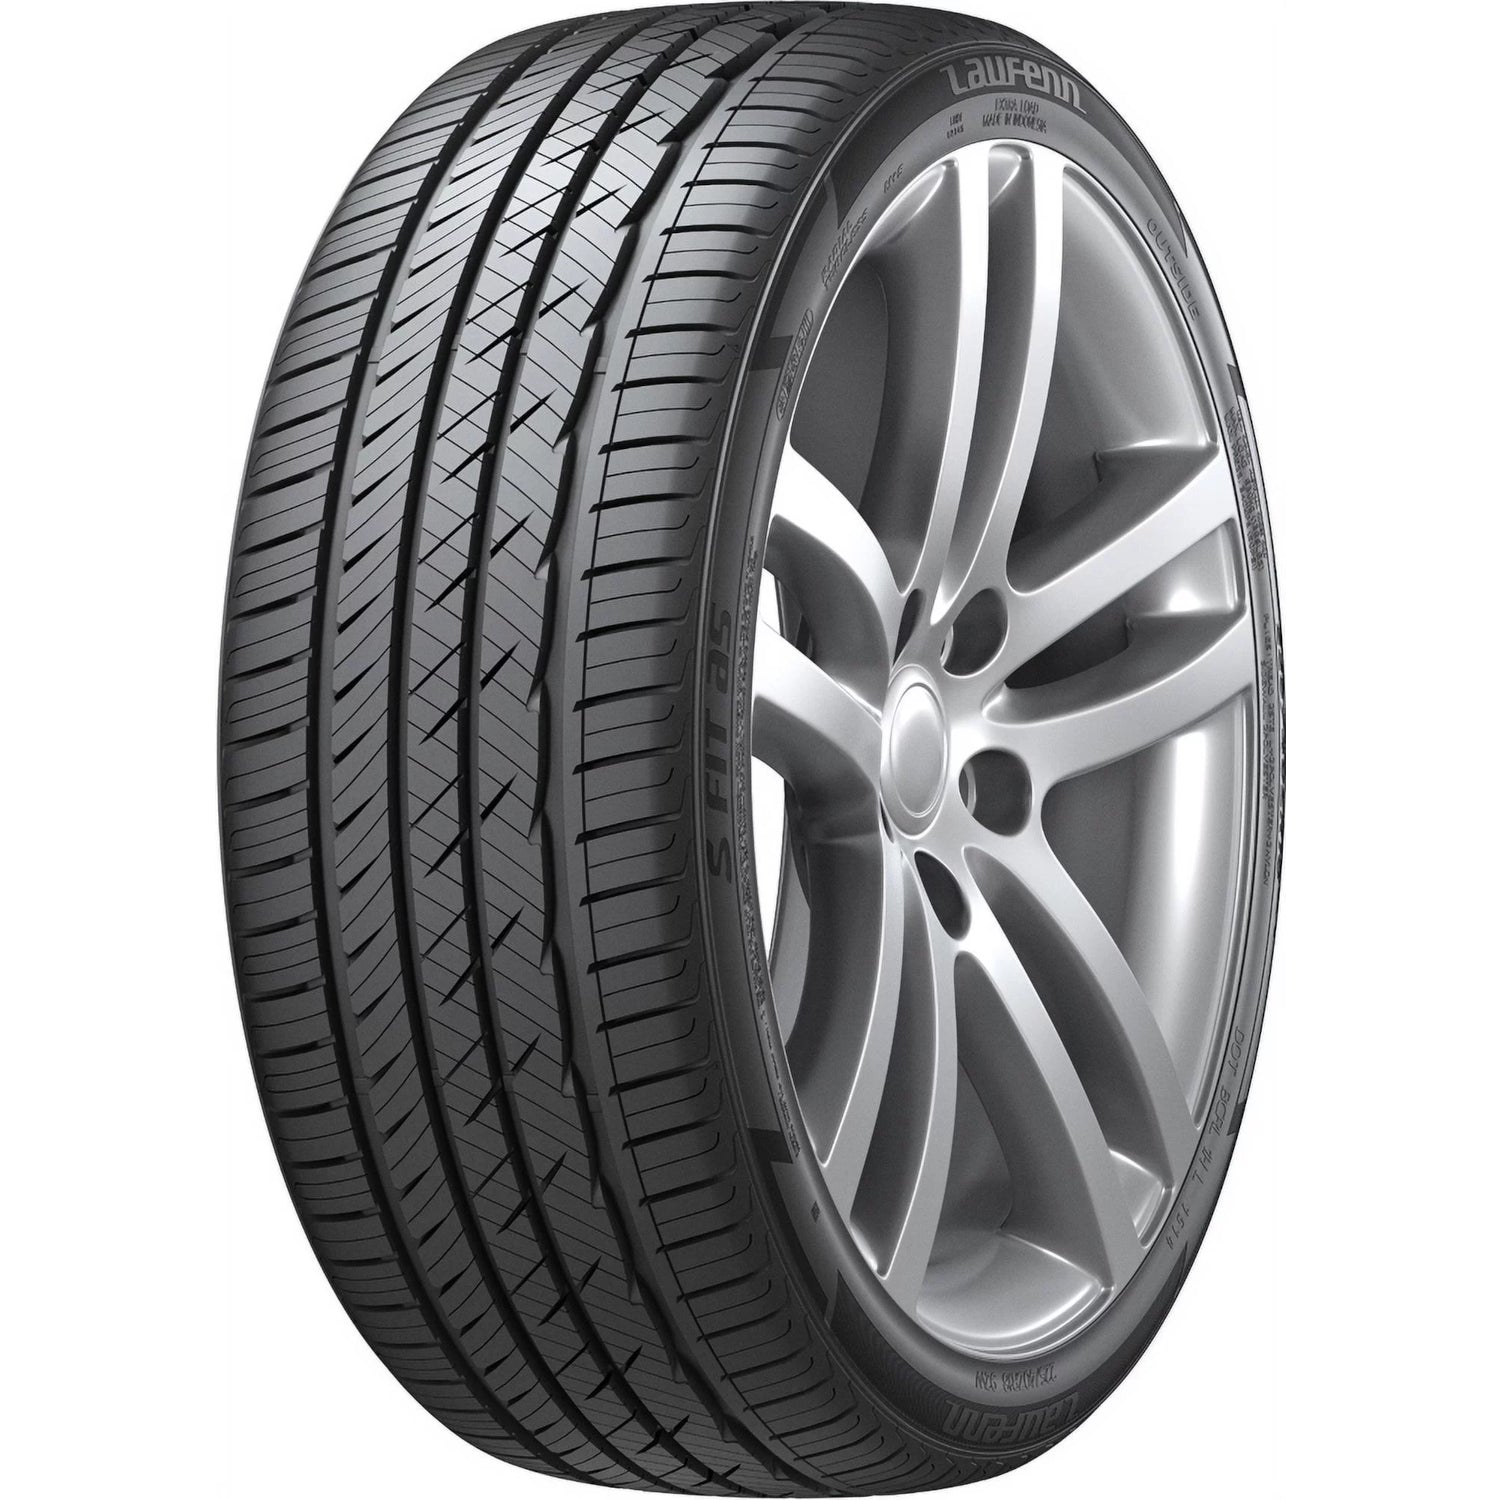 LAUFENN S FIT AS 205/55ZR16 (24.9X8.1R 16) Tires